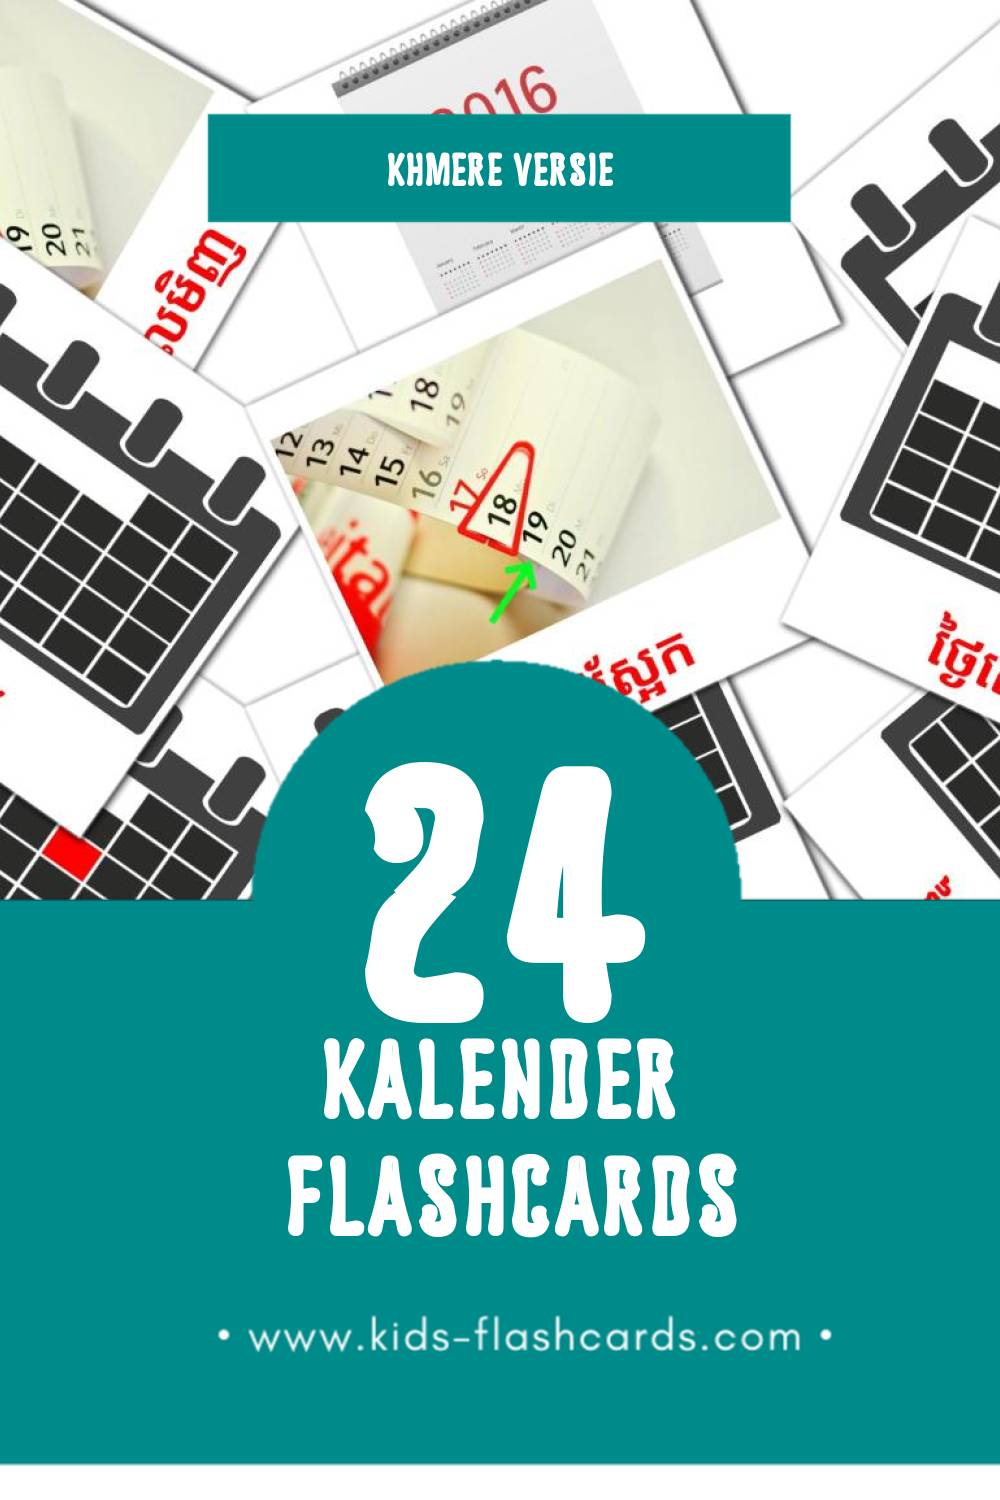 Visuele ប្រតិទិន Flashcards voor Kleuters (24 kaarten in het Khmer)